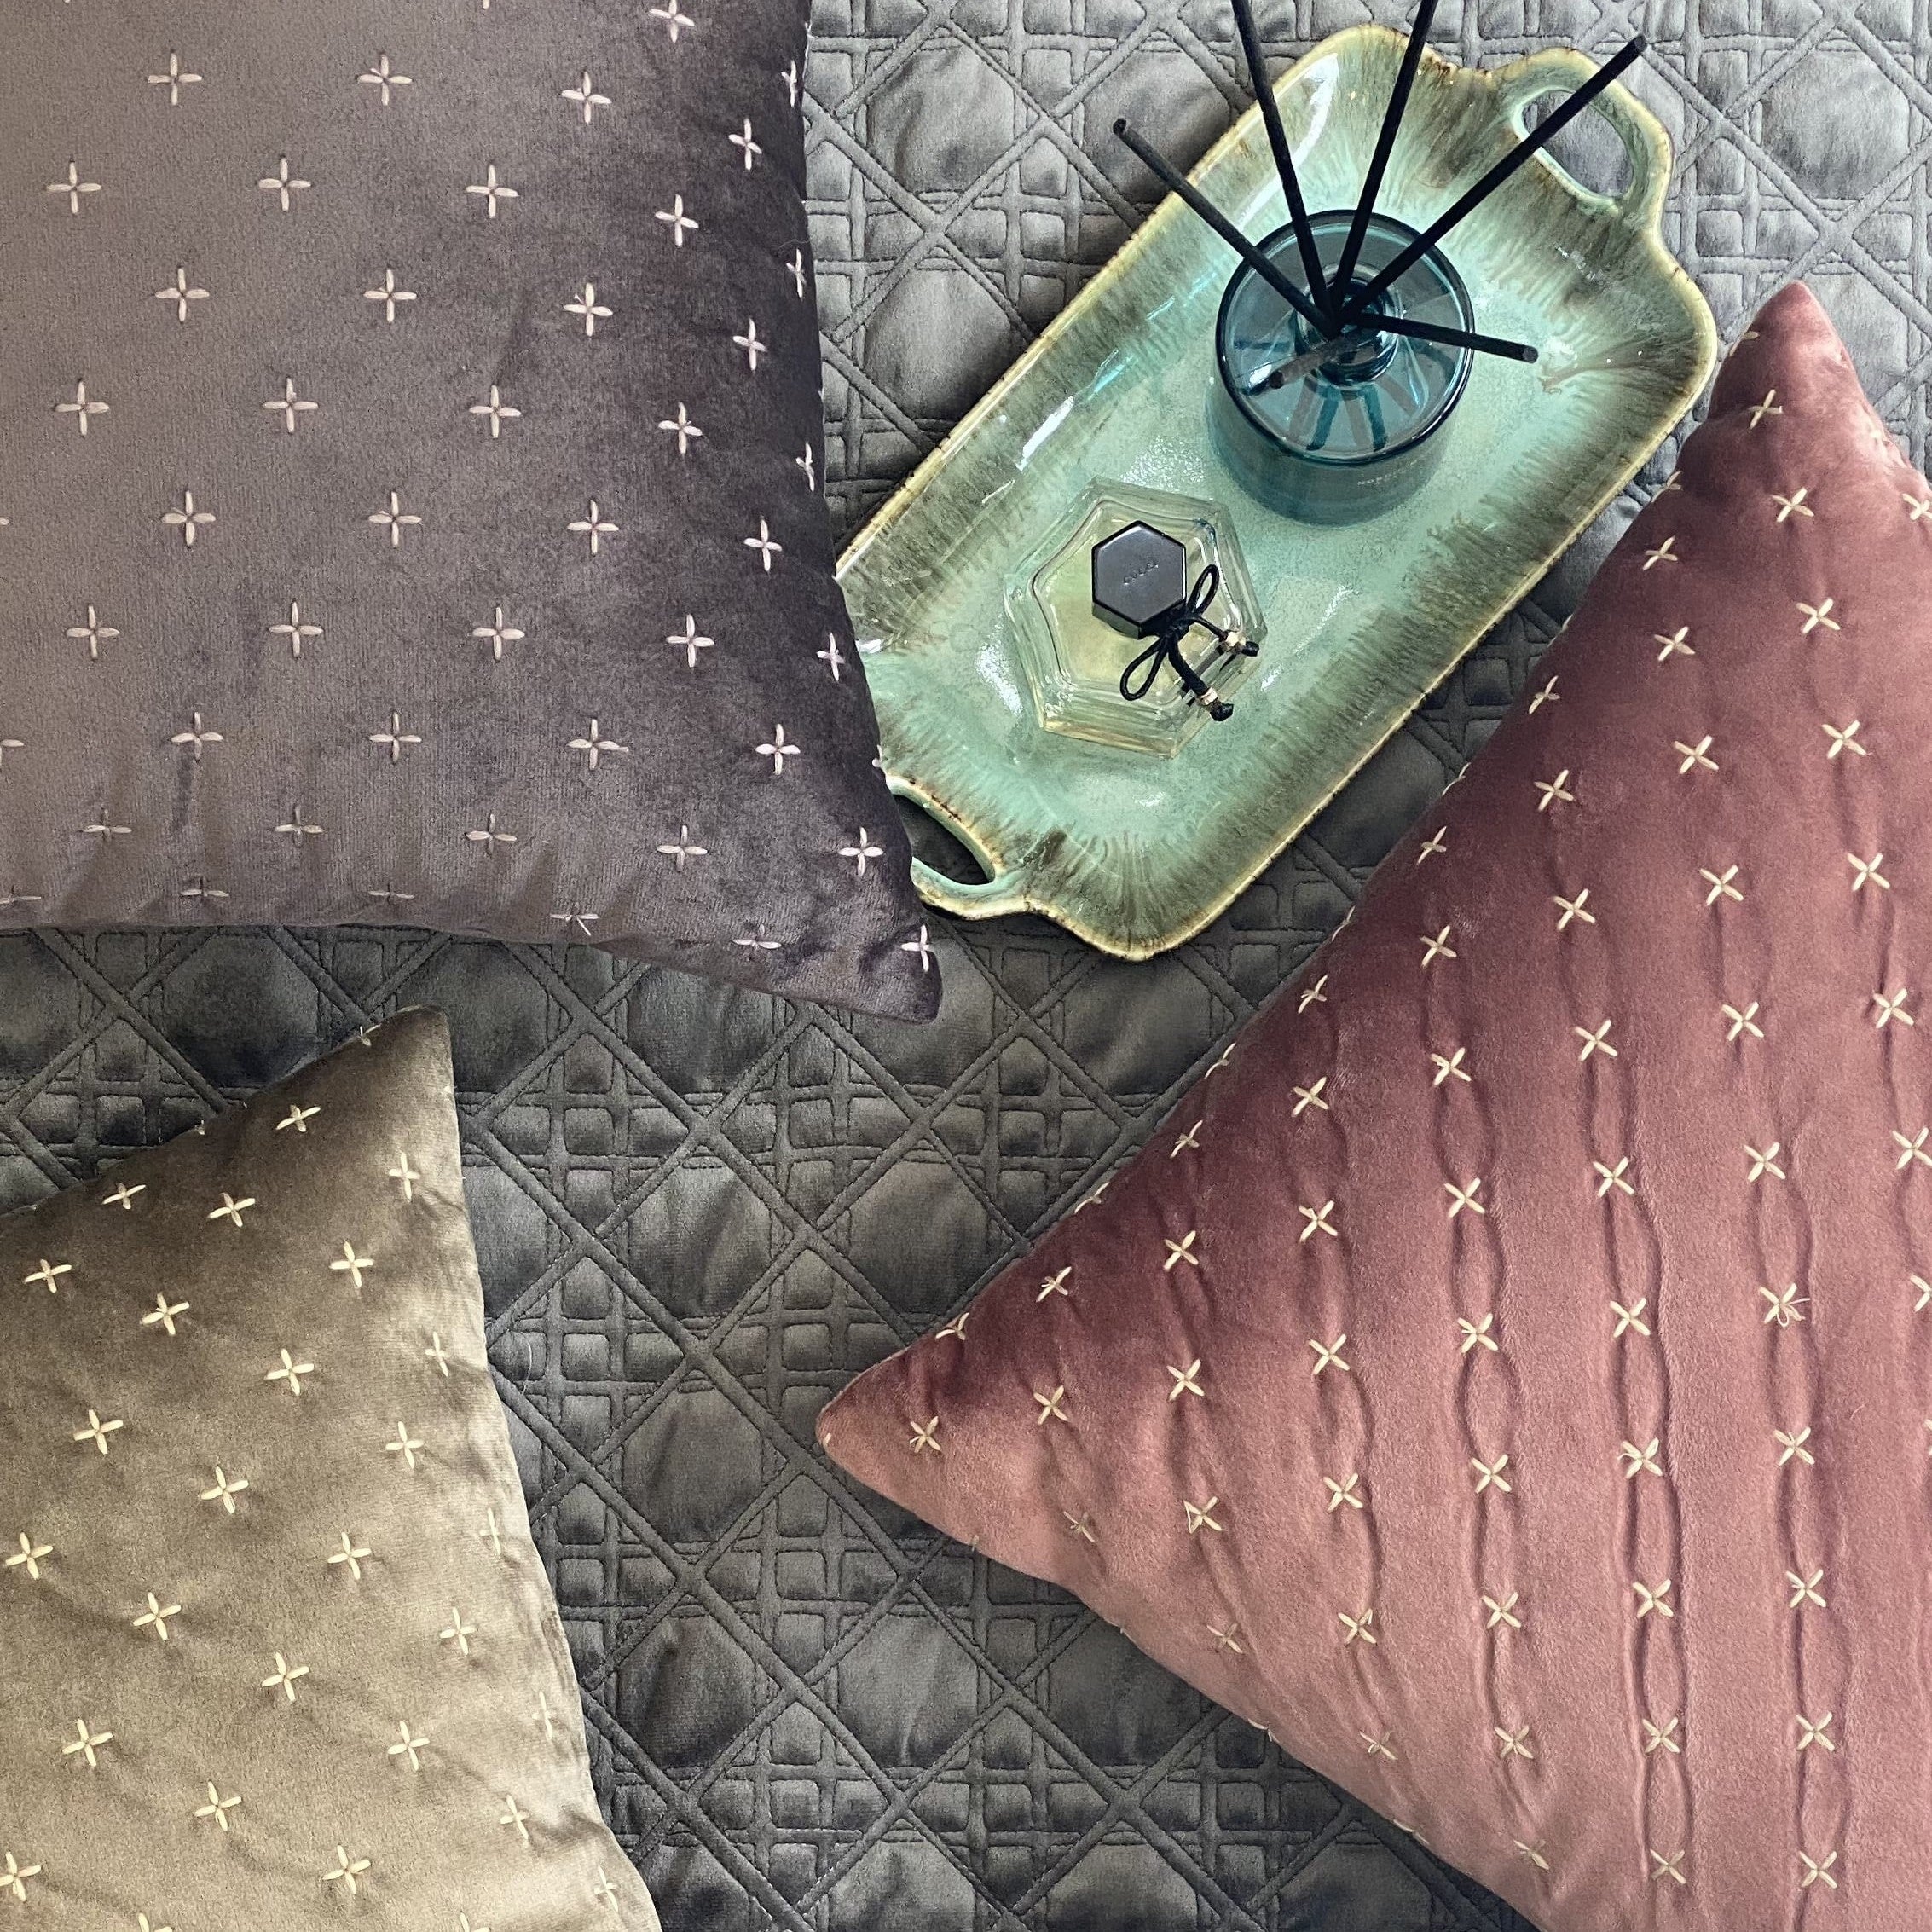 Decorative Sparkle Mousse Velvet Cushion Cover 16x16